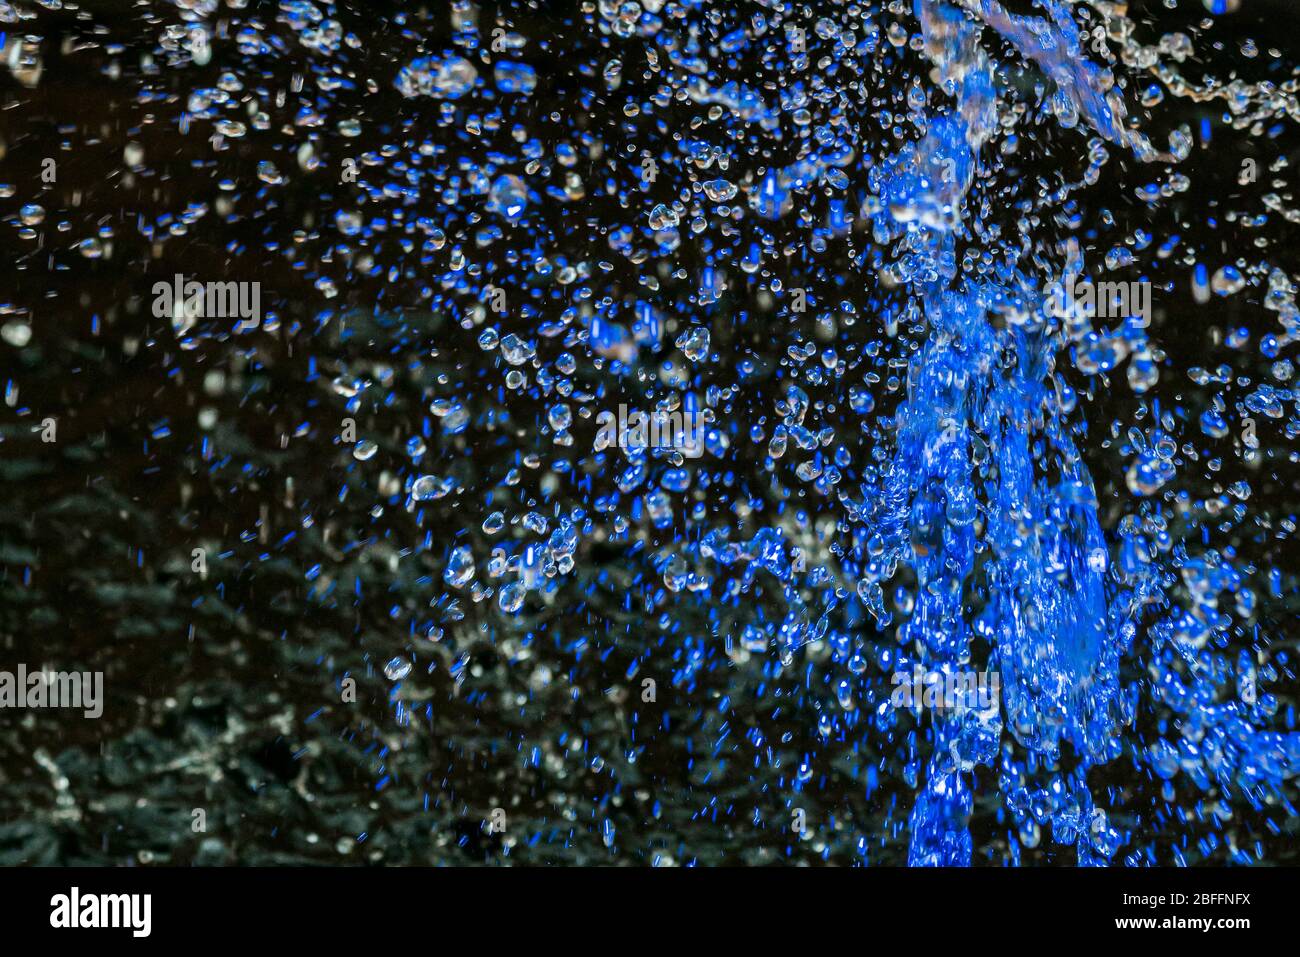 Primo piano di gocce d'acqua blu catturate a metà aria sopra una fontana su uno sfondo scuro Foto Stock